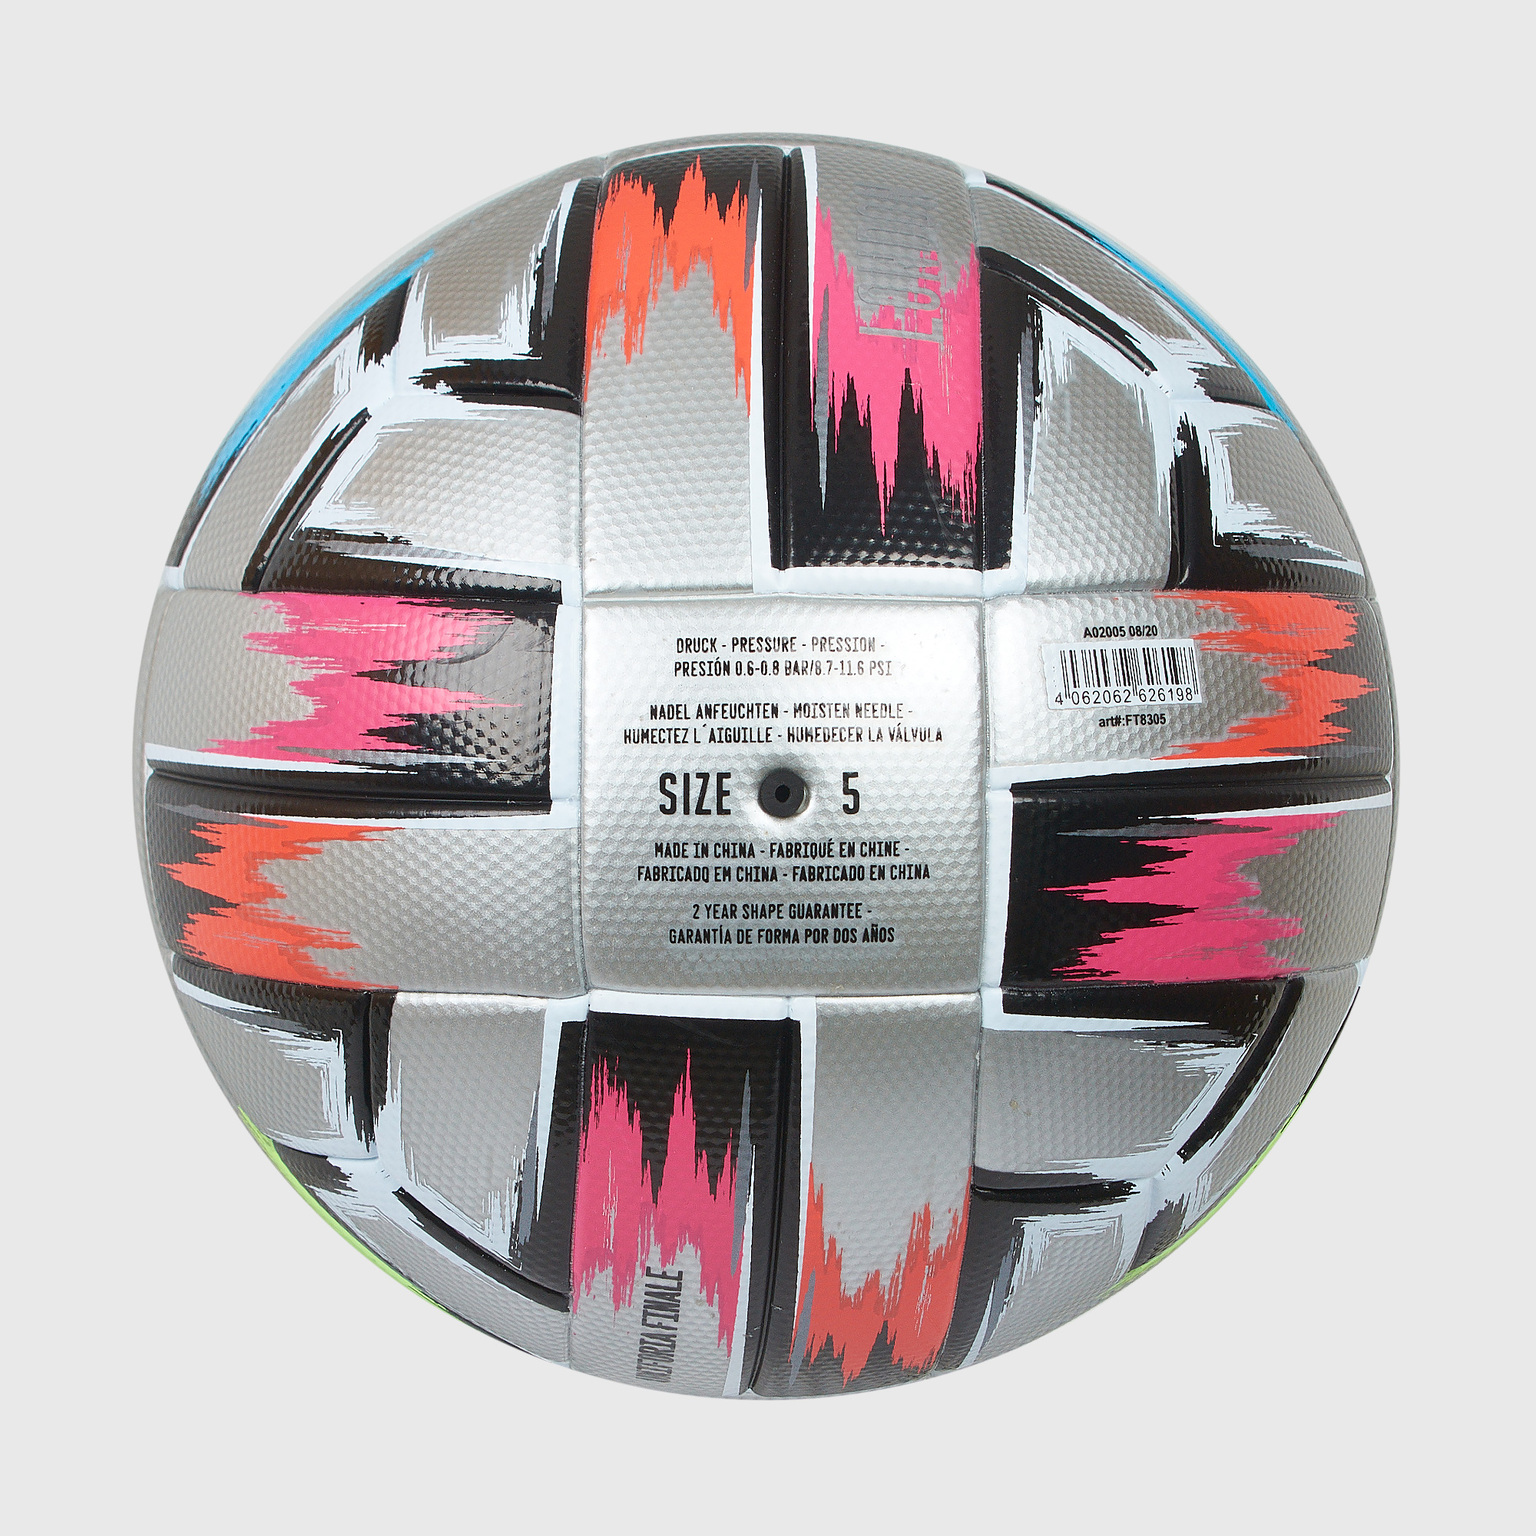 Футбольный мяч Adidas Uniforia Finale FT8305